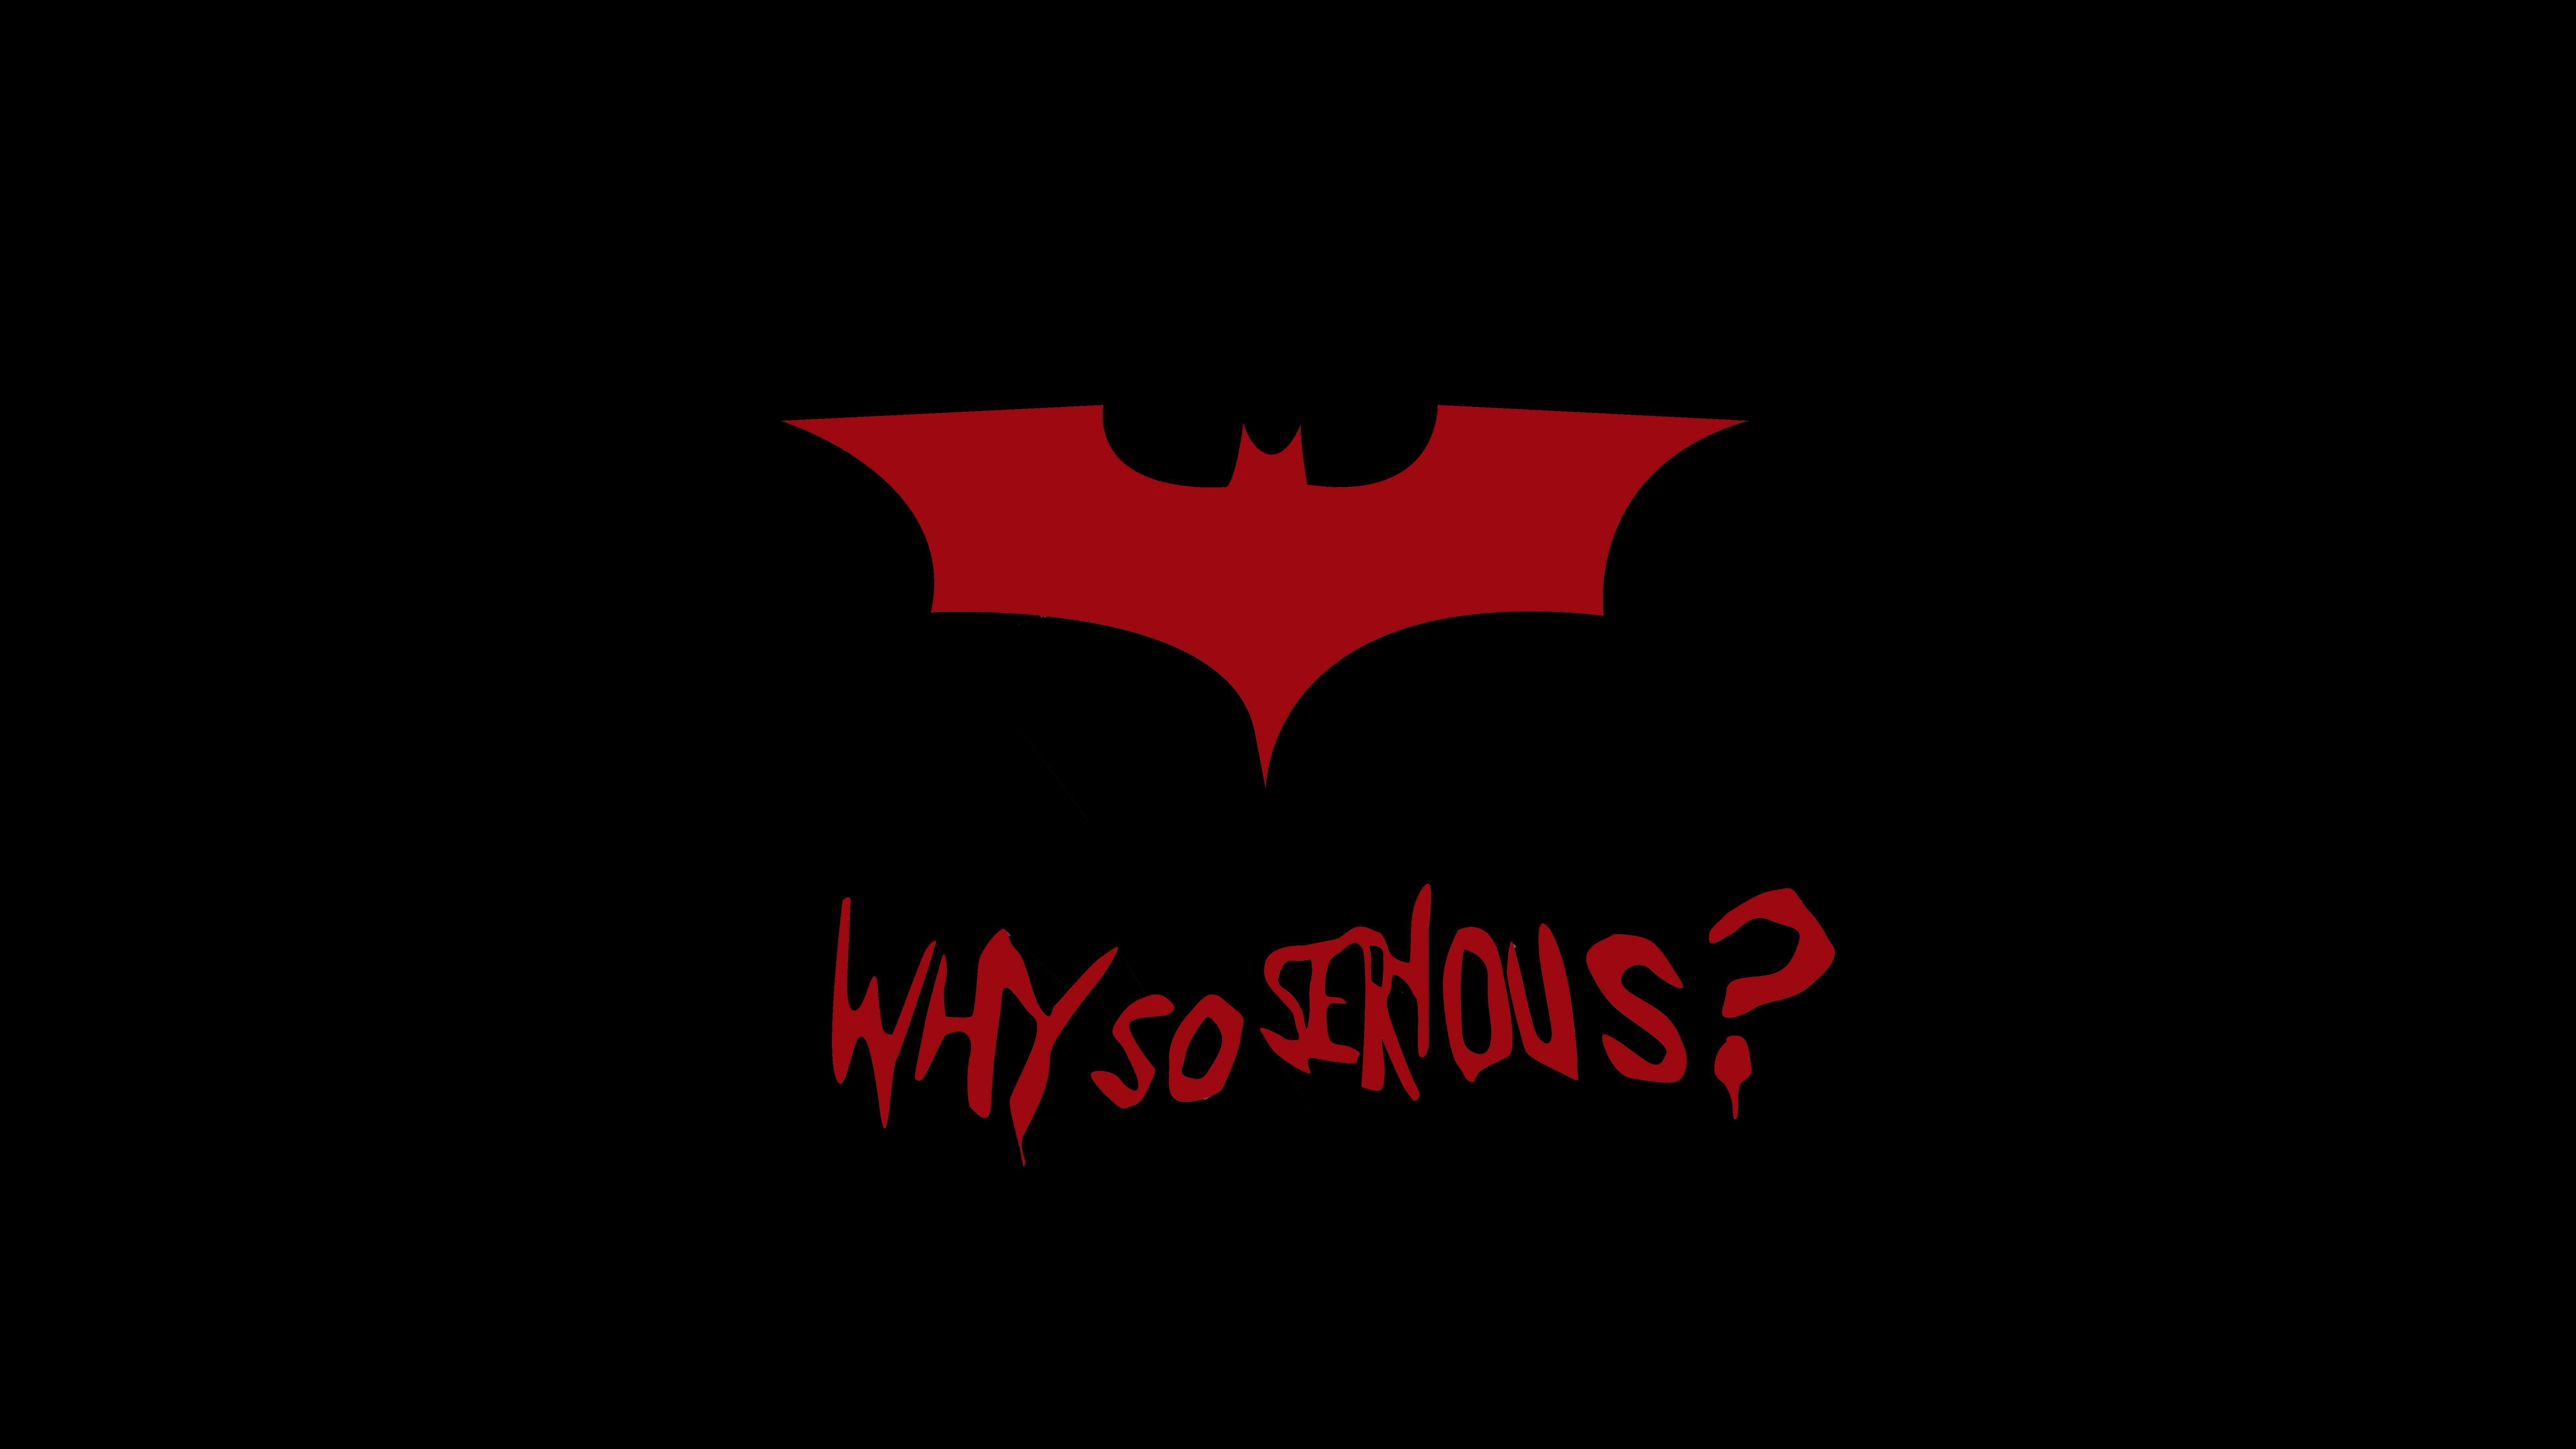 8001x4501 #Batman, # Tại sao lại nghiêm trọng ?, K, # Trích dẫn phổ biến, #Joker